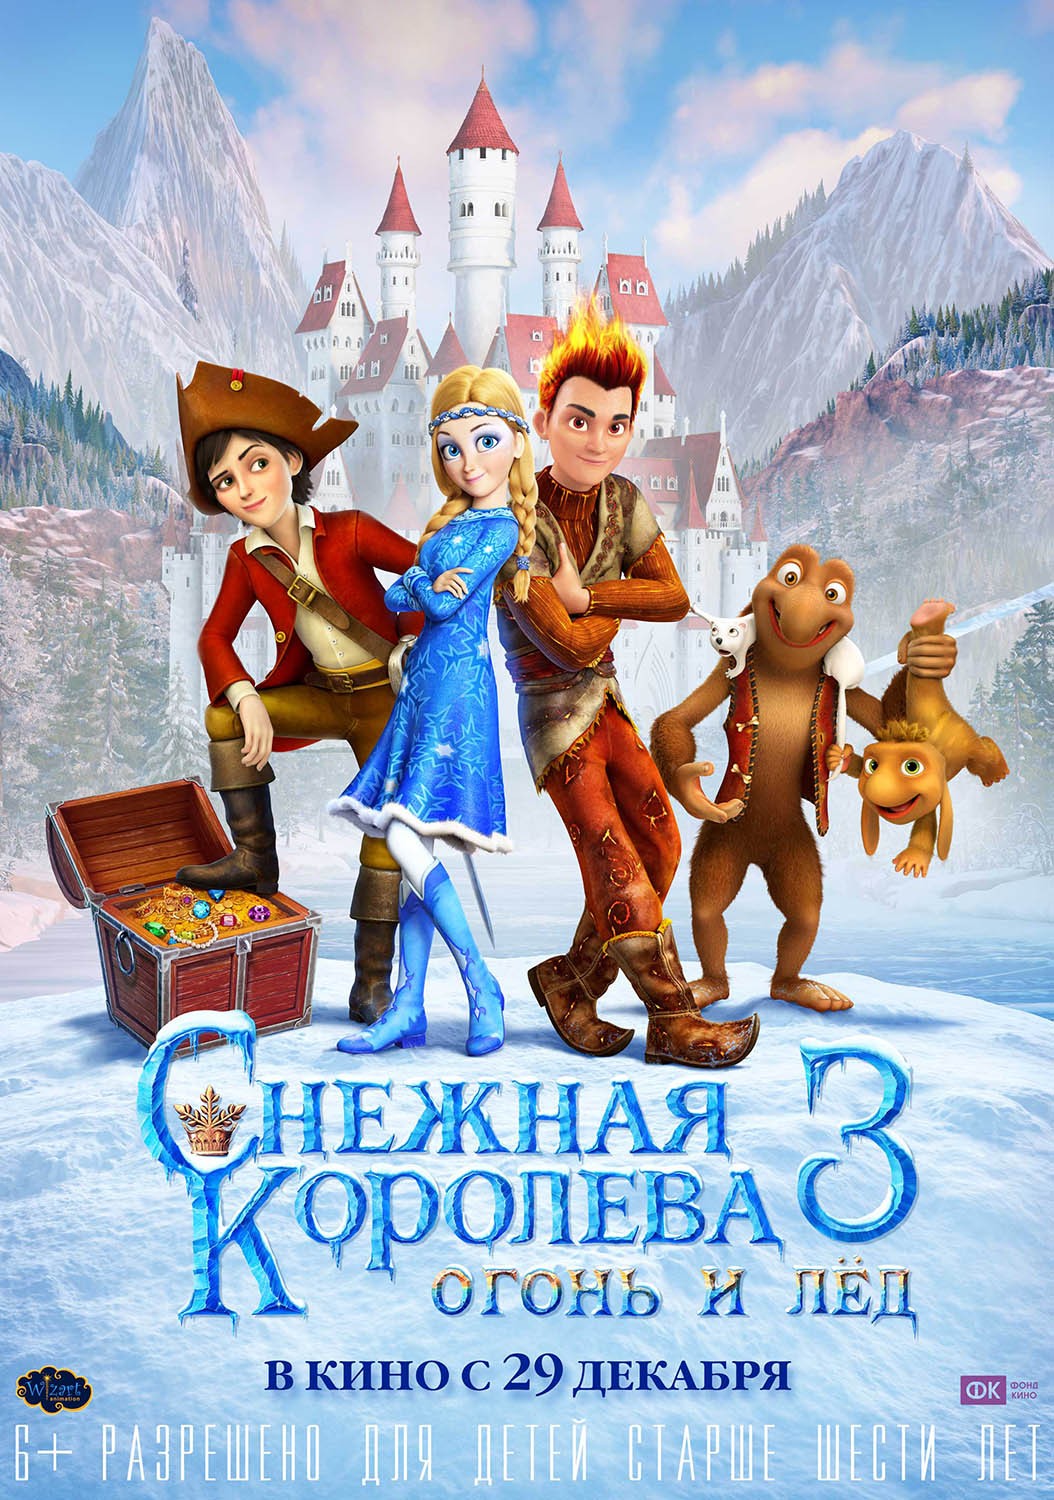 Снежная королева 3. Огонь и лед: постер N130274